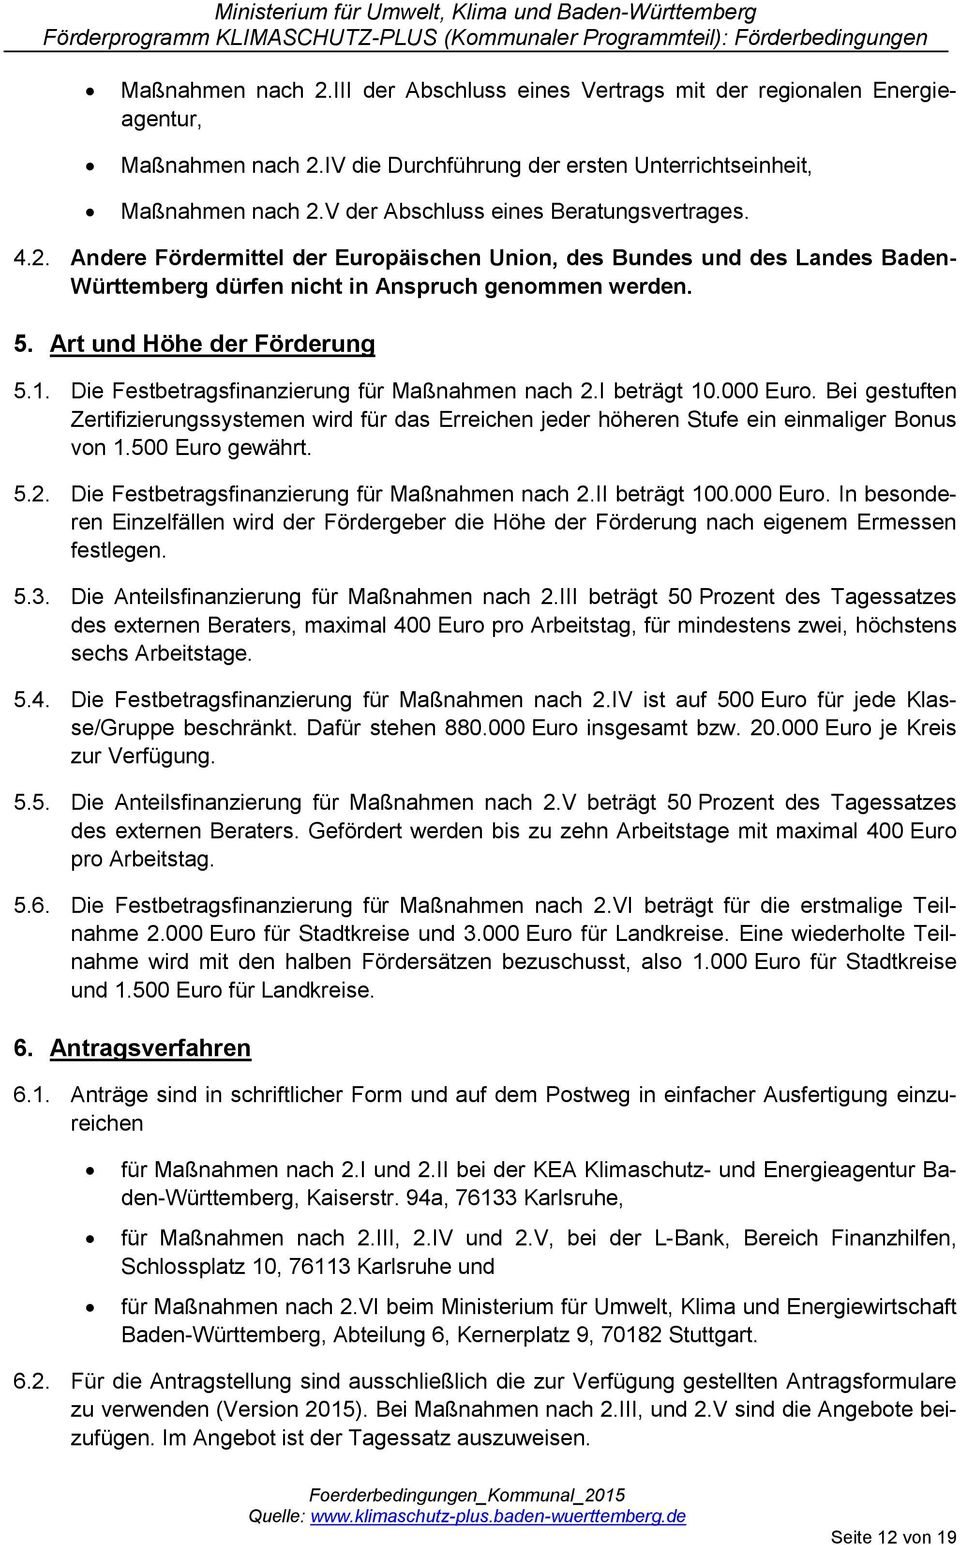 Art und Höhe der Förderung 5.1. Die Festbetragsfinanzierung für Maßnahmen nach 2.I beträgt 10.000 Euro.